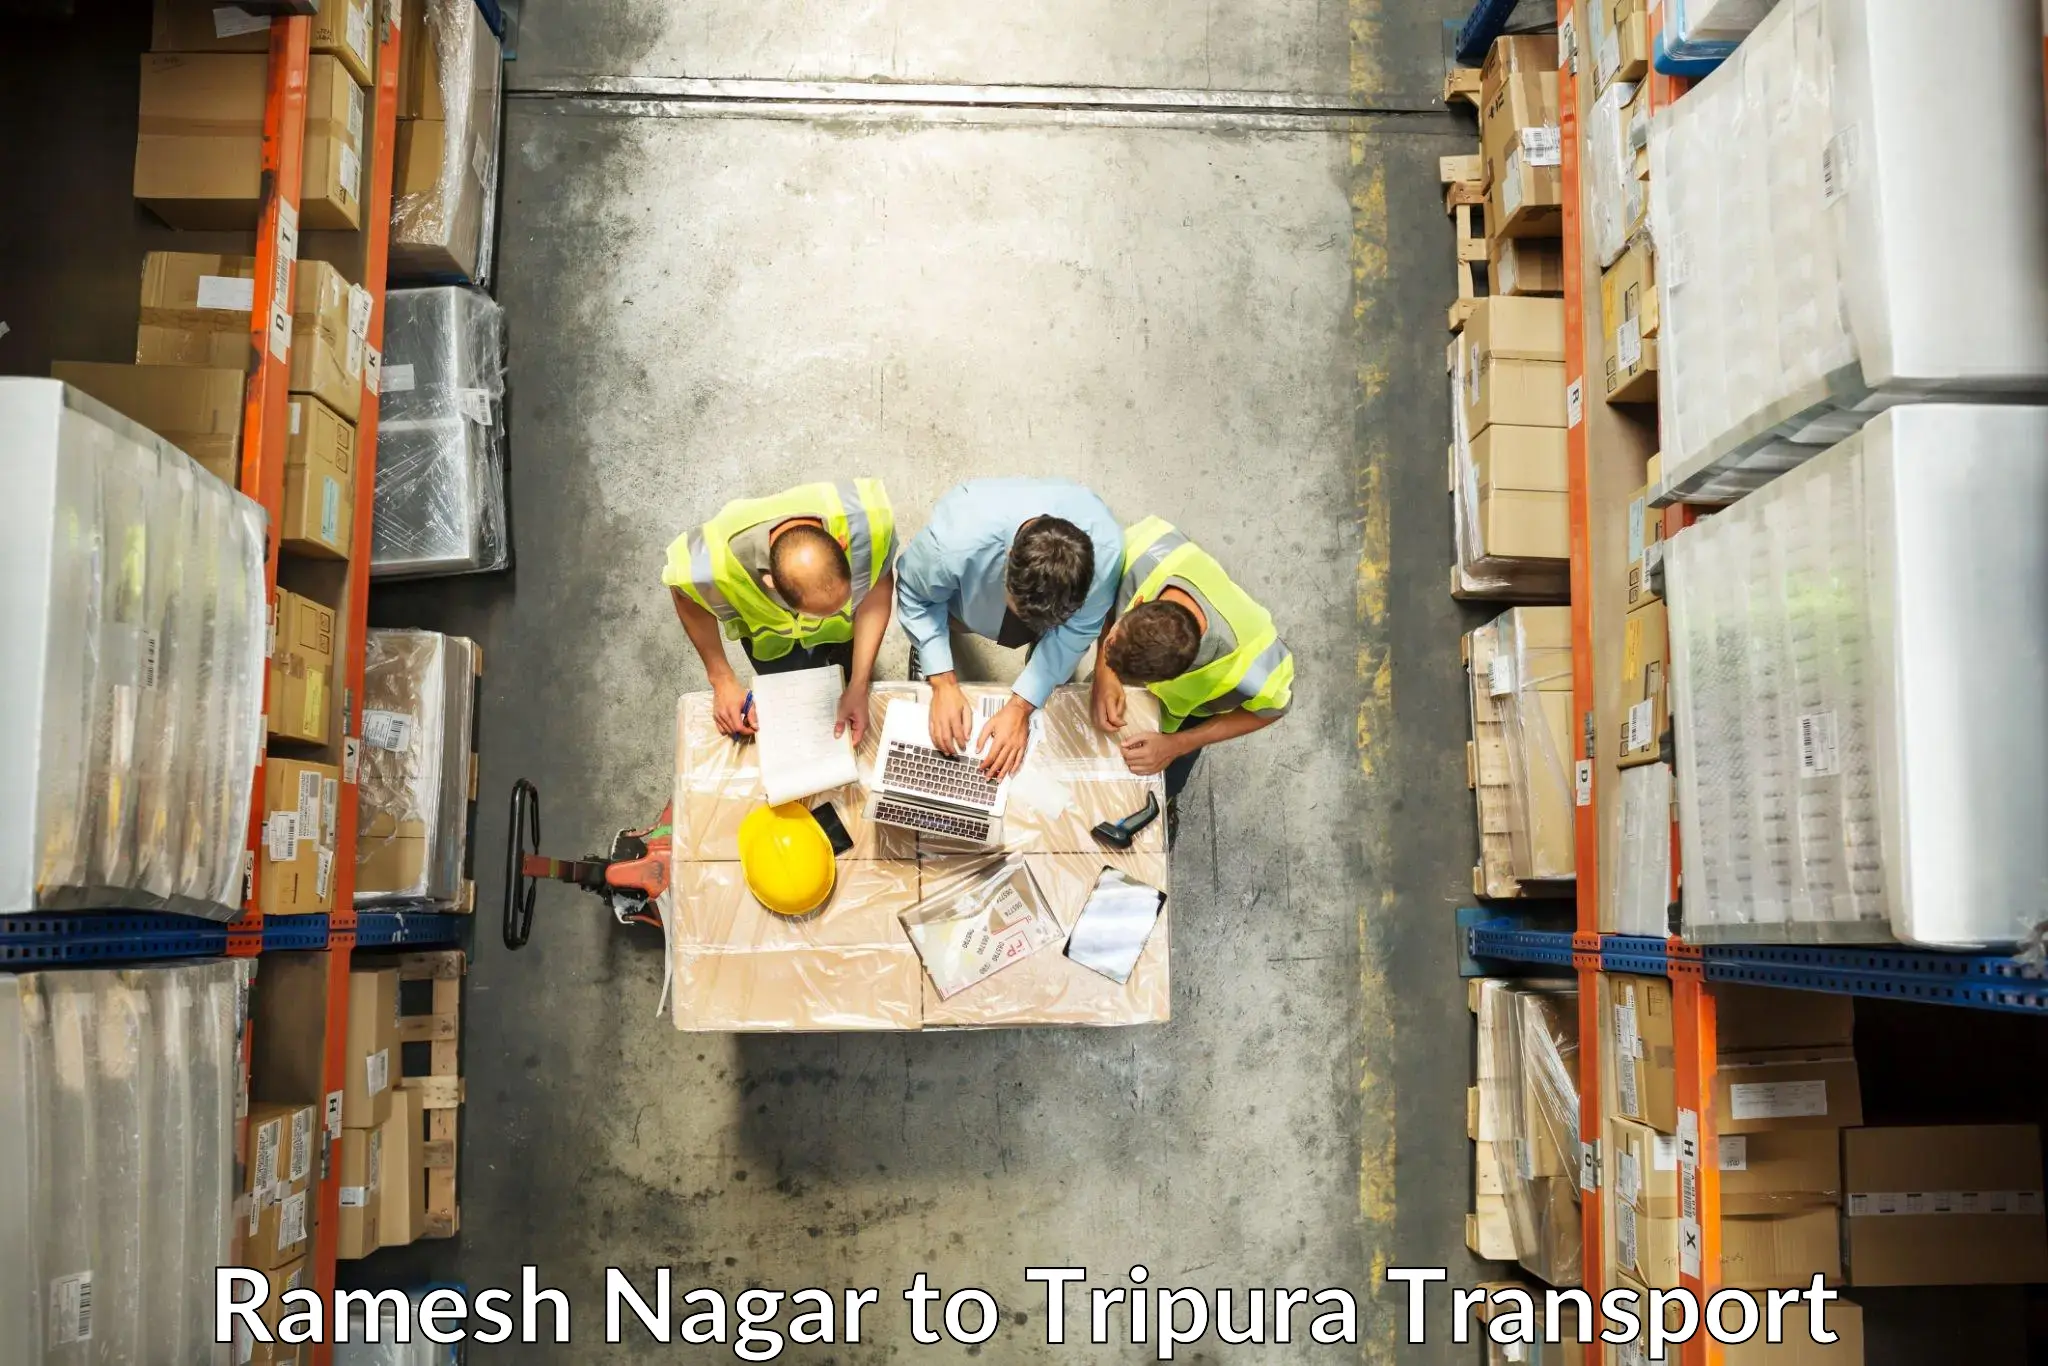 Transport shared services Ramesh Nagar to Kailashahar